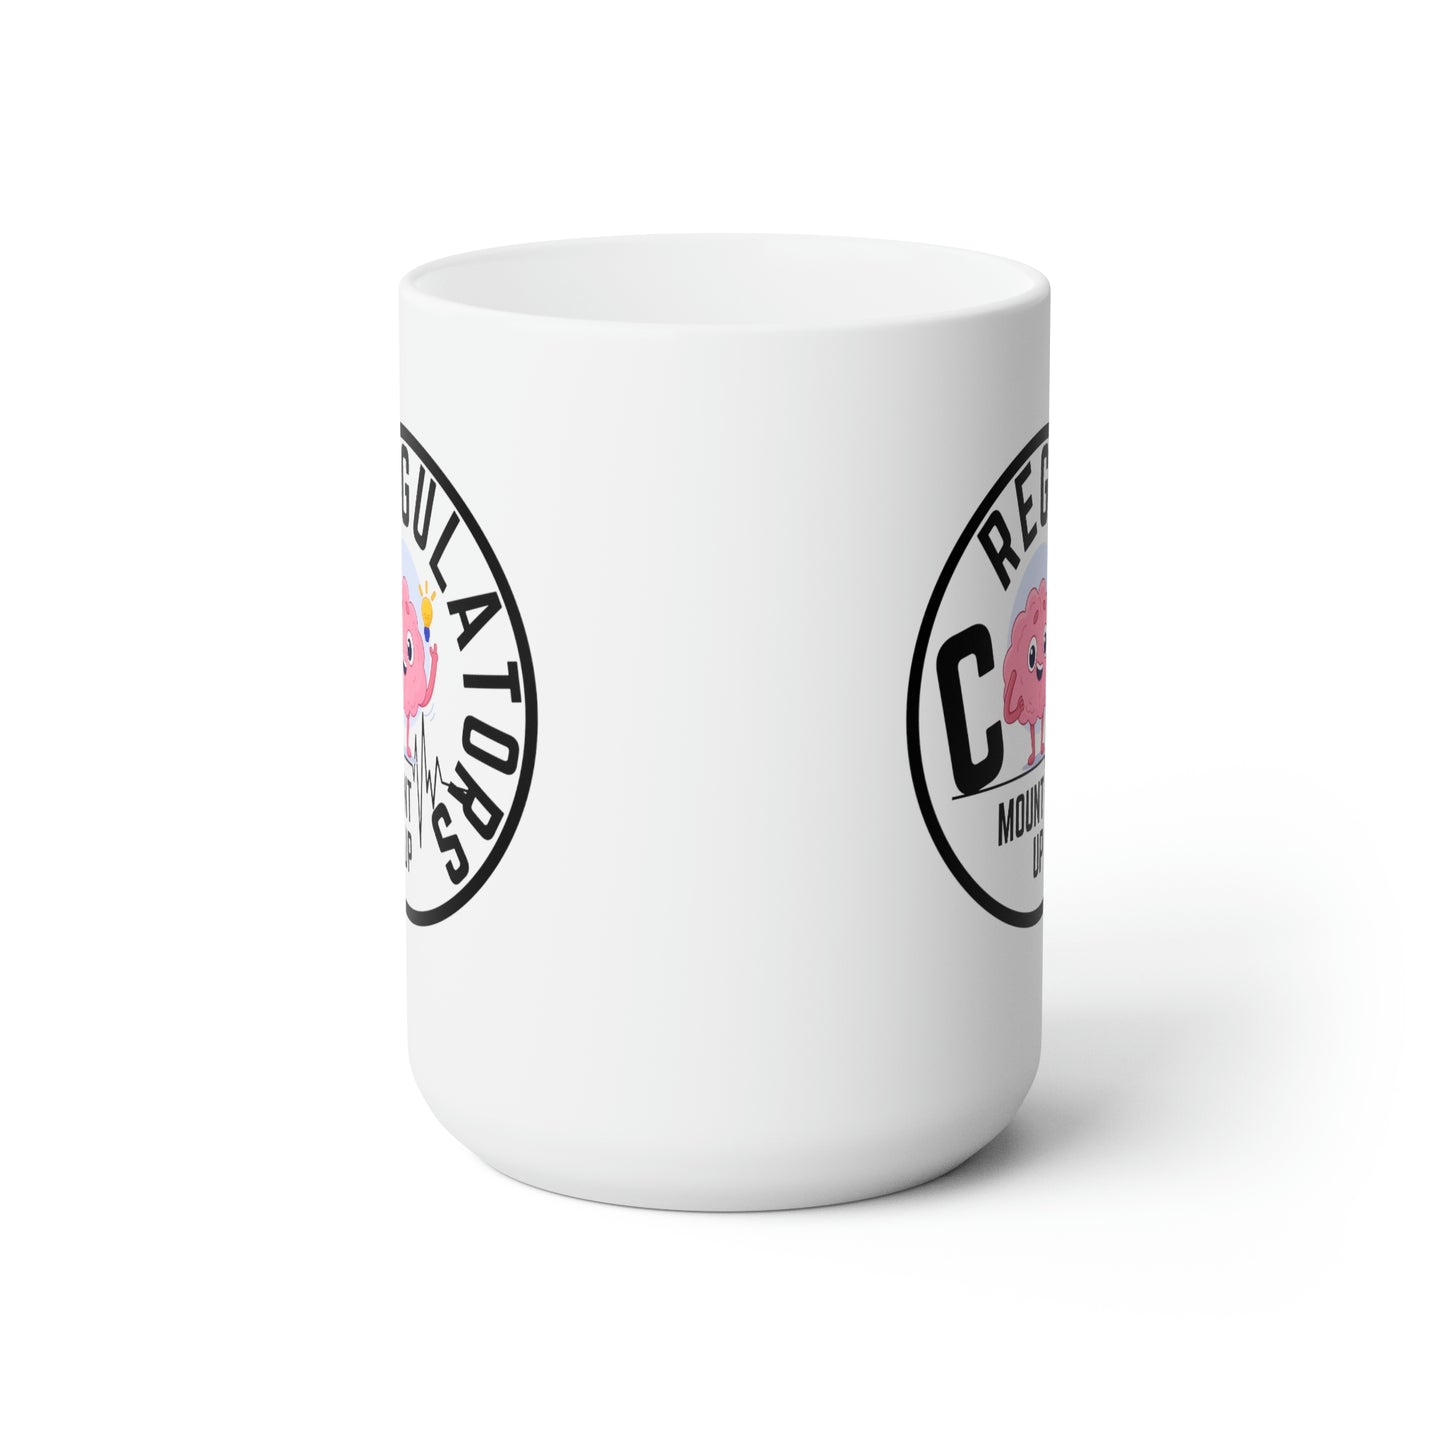 Official Co-Regulators Merch (round) Ceramic Mug 15oz